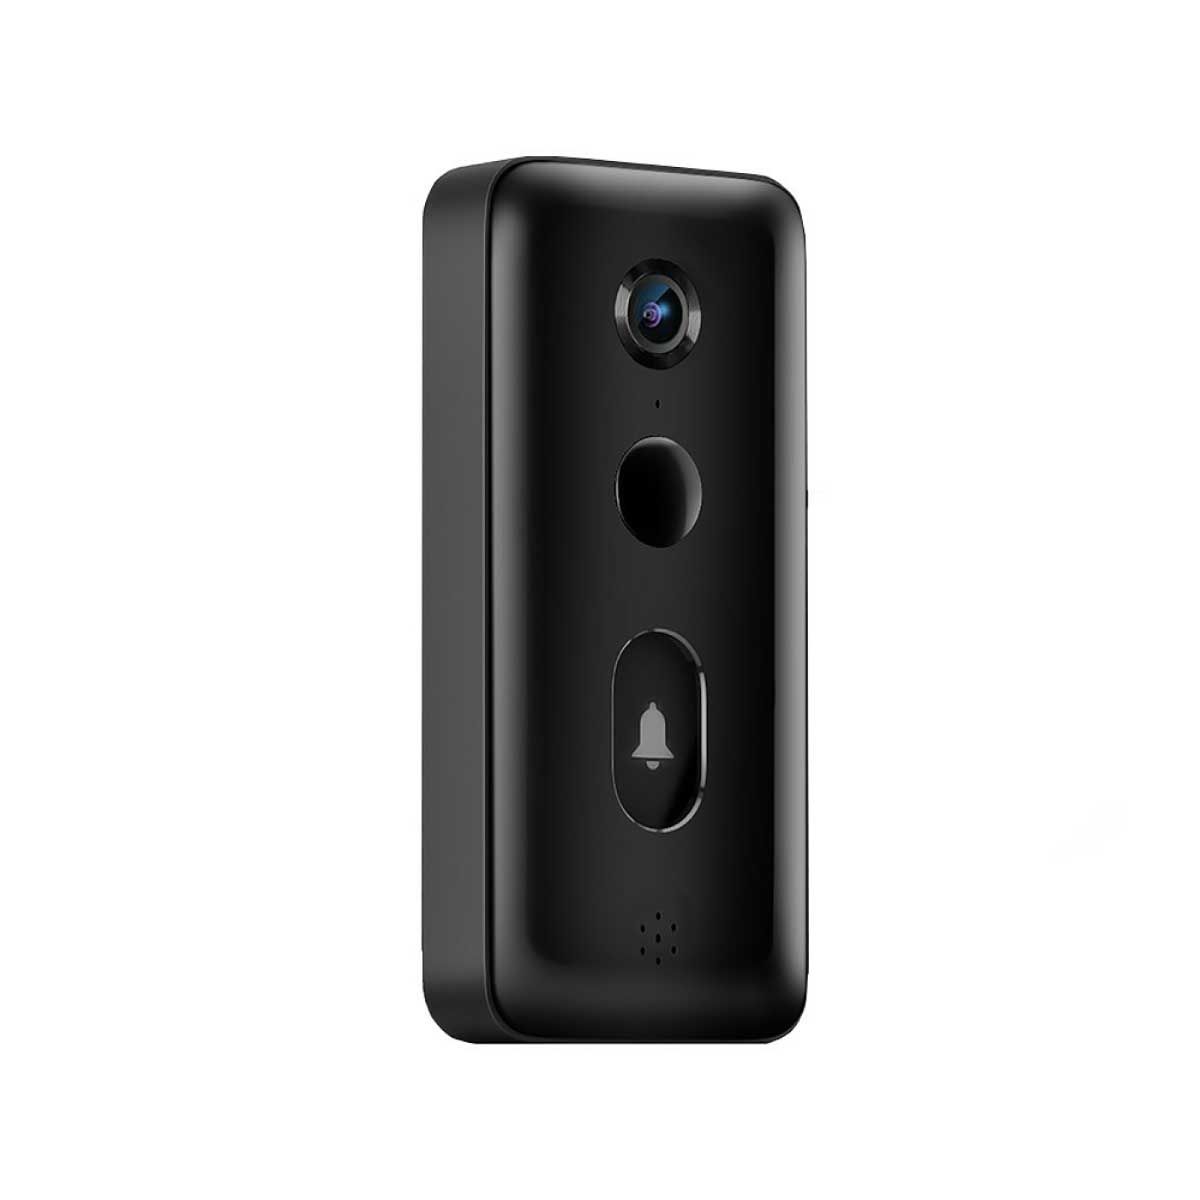 Xiaomi Smart Doorbell 3 รุ่น BHR5416GL กริ่งประตูอัจฉริยะ พร้อมกล้องความละเอียด 2K